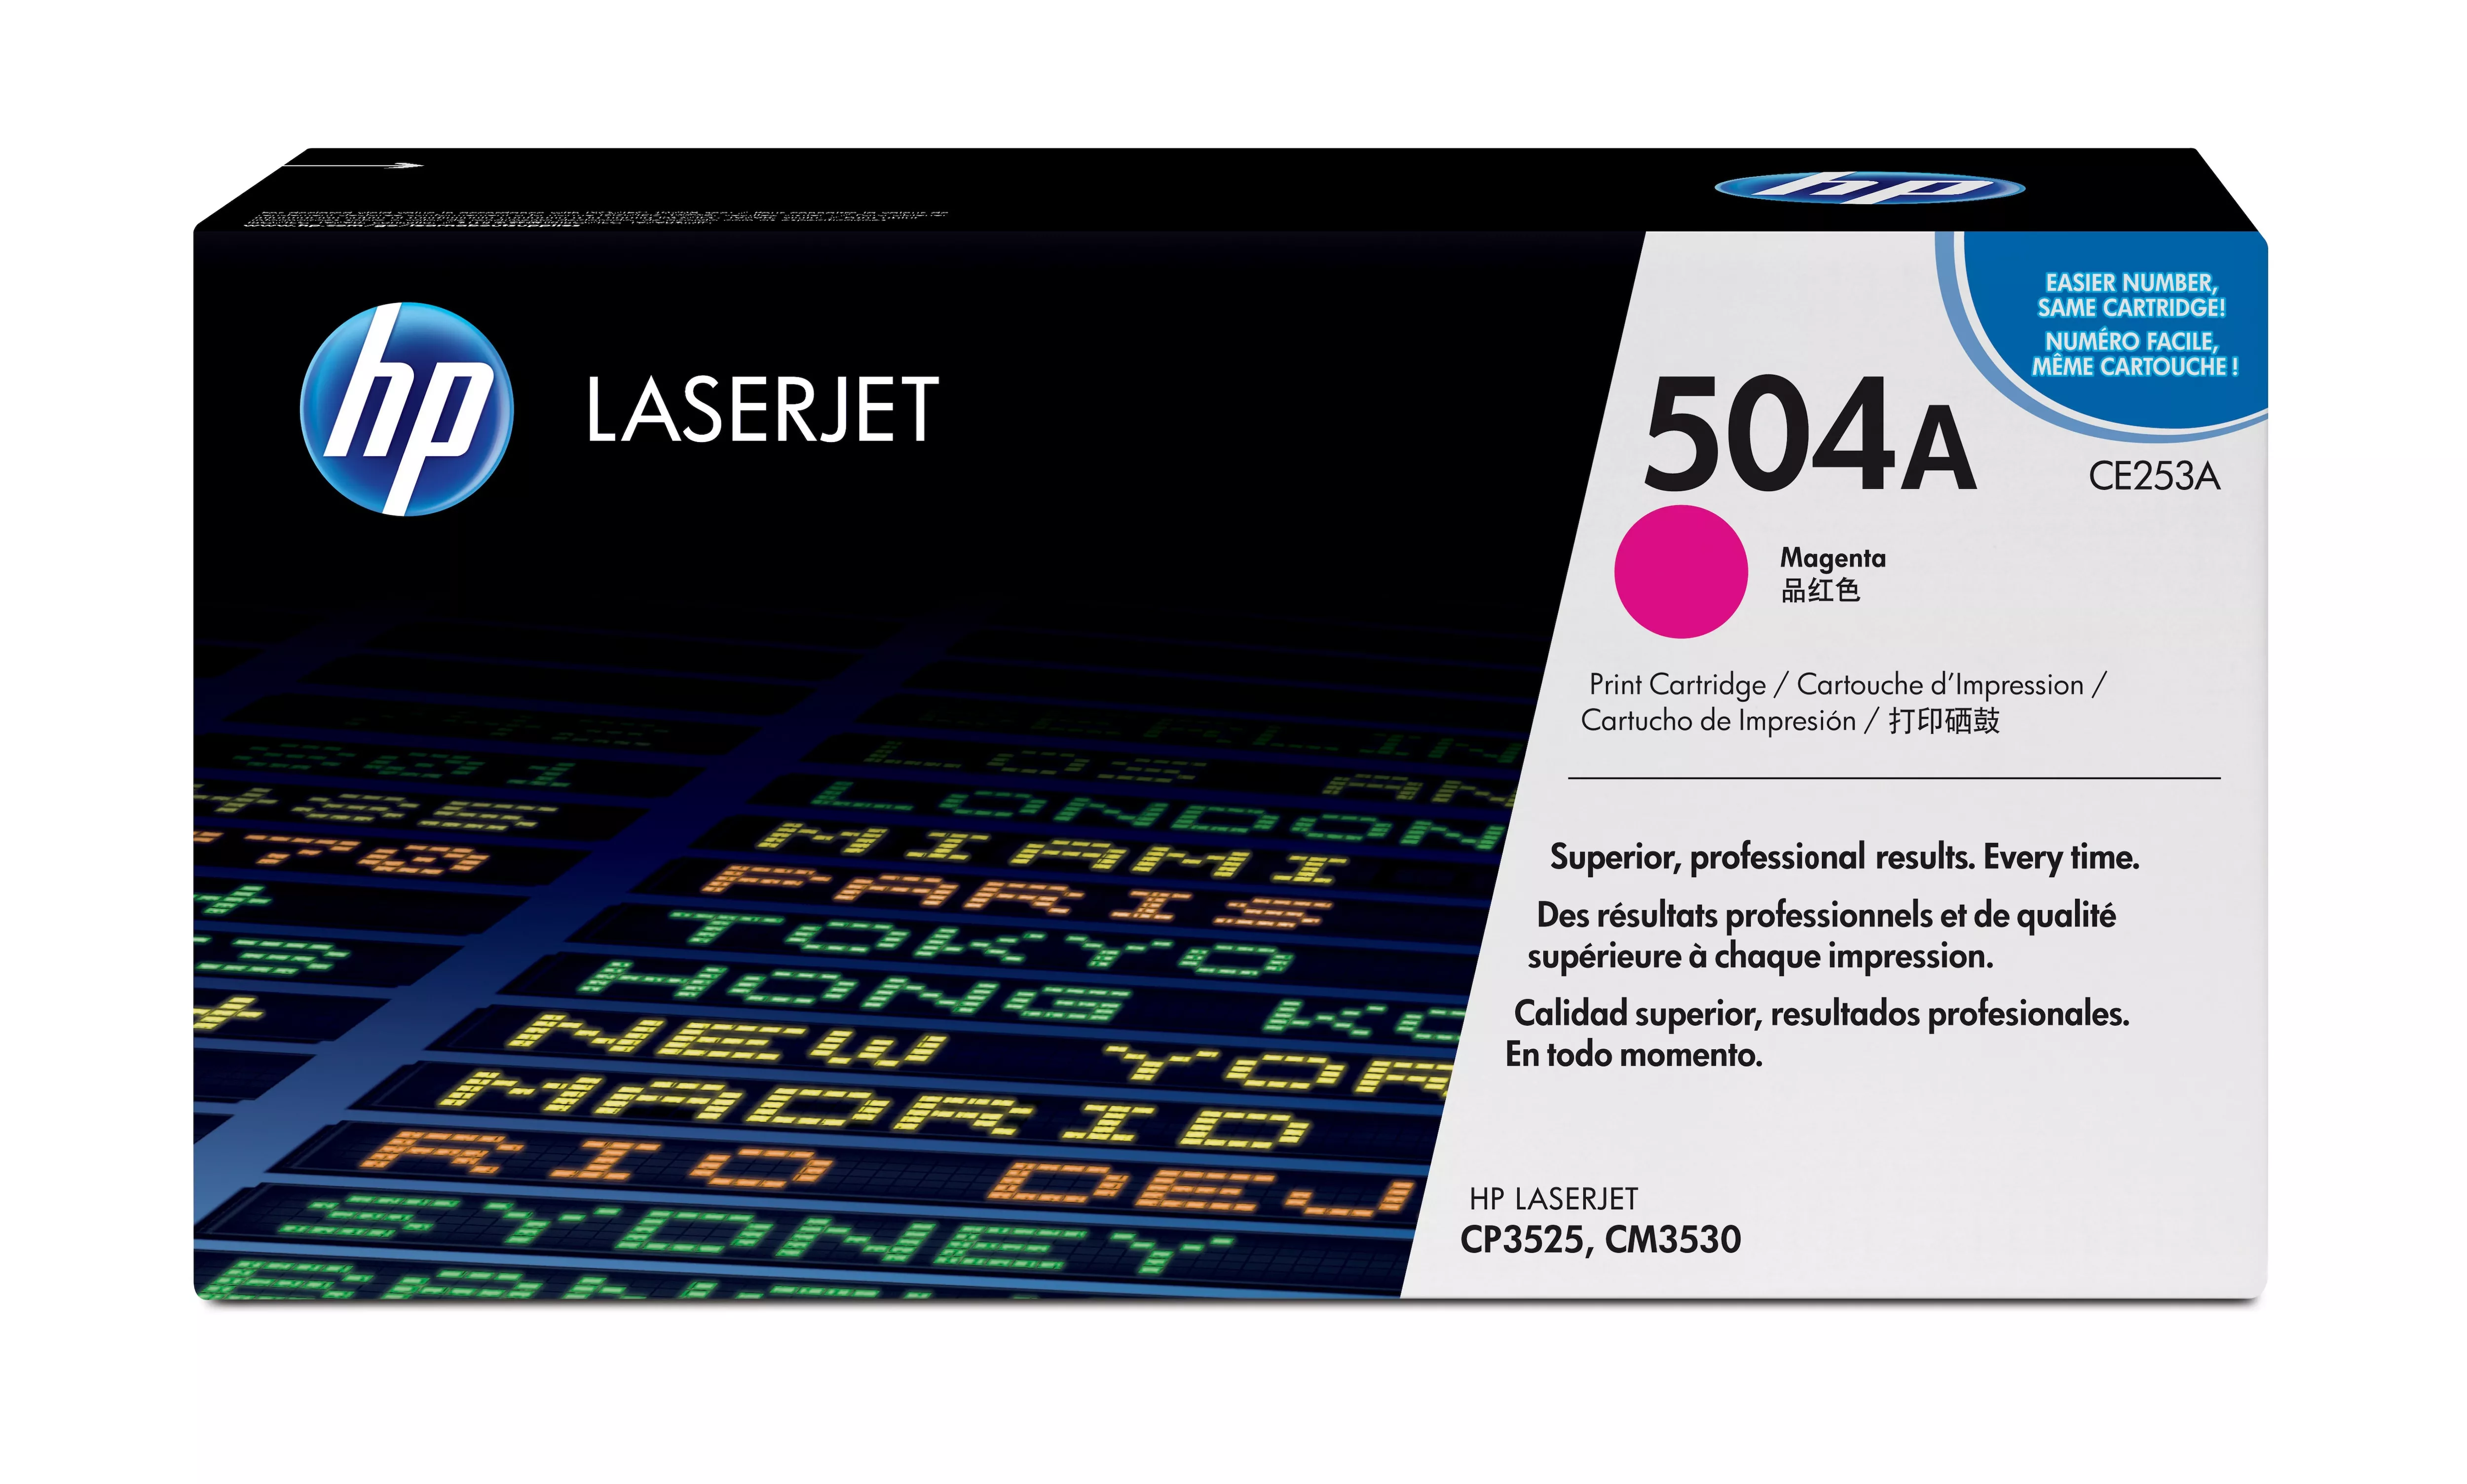 Achat HP 504A original Colour LaserJet Toner cartridge CE253A au meilleur prix